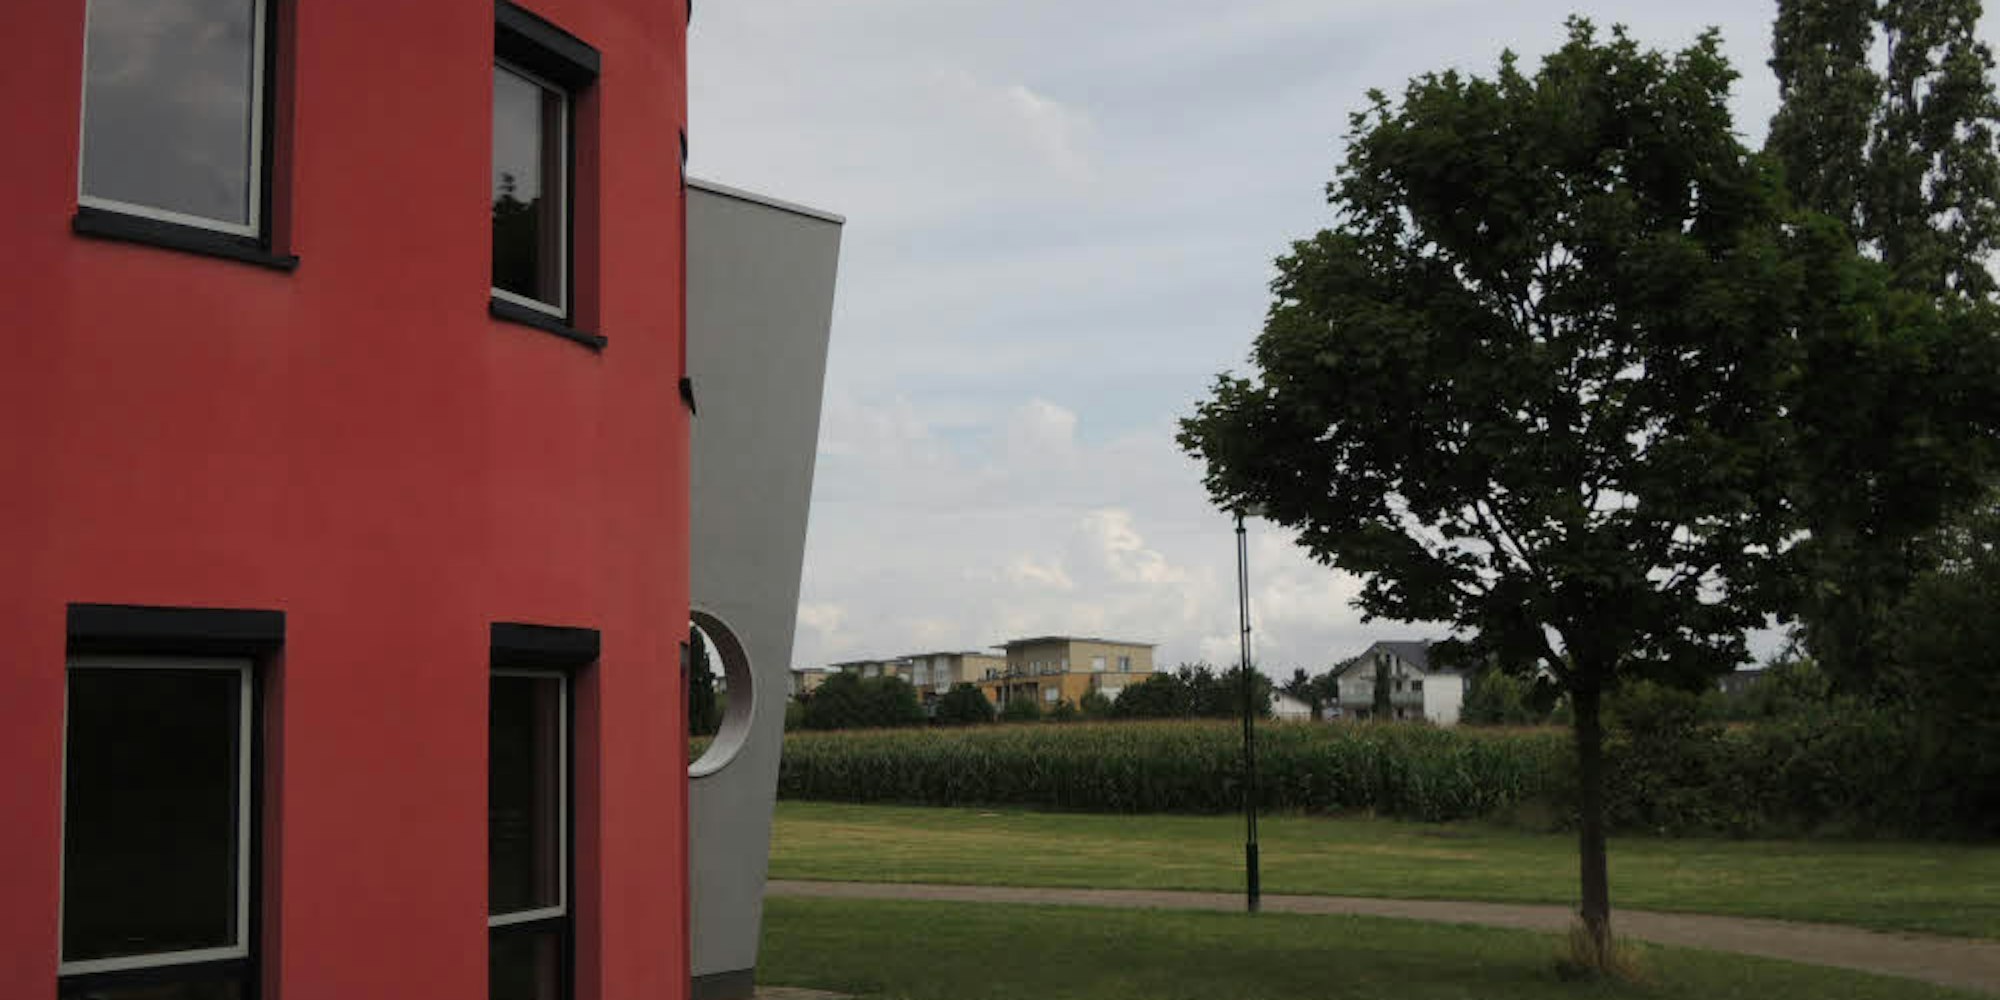 In der Nähe des Jugendzentrums an der Hüttenstraße in Sindorf soll ein Wohngebiet entstehen.